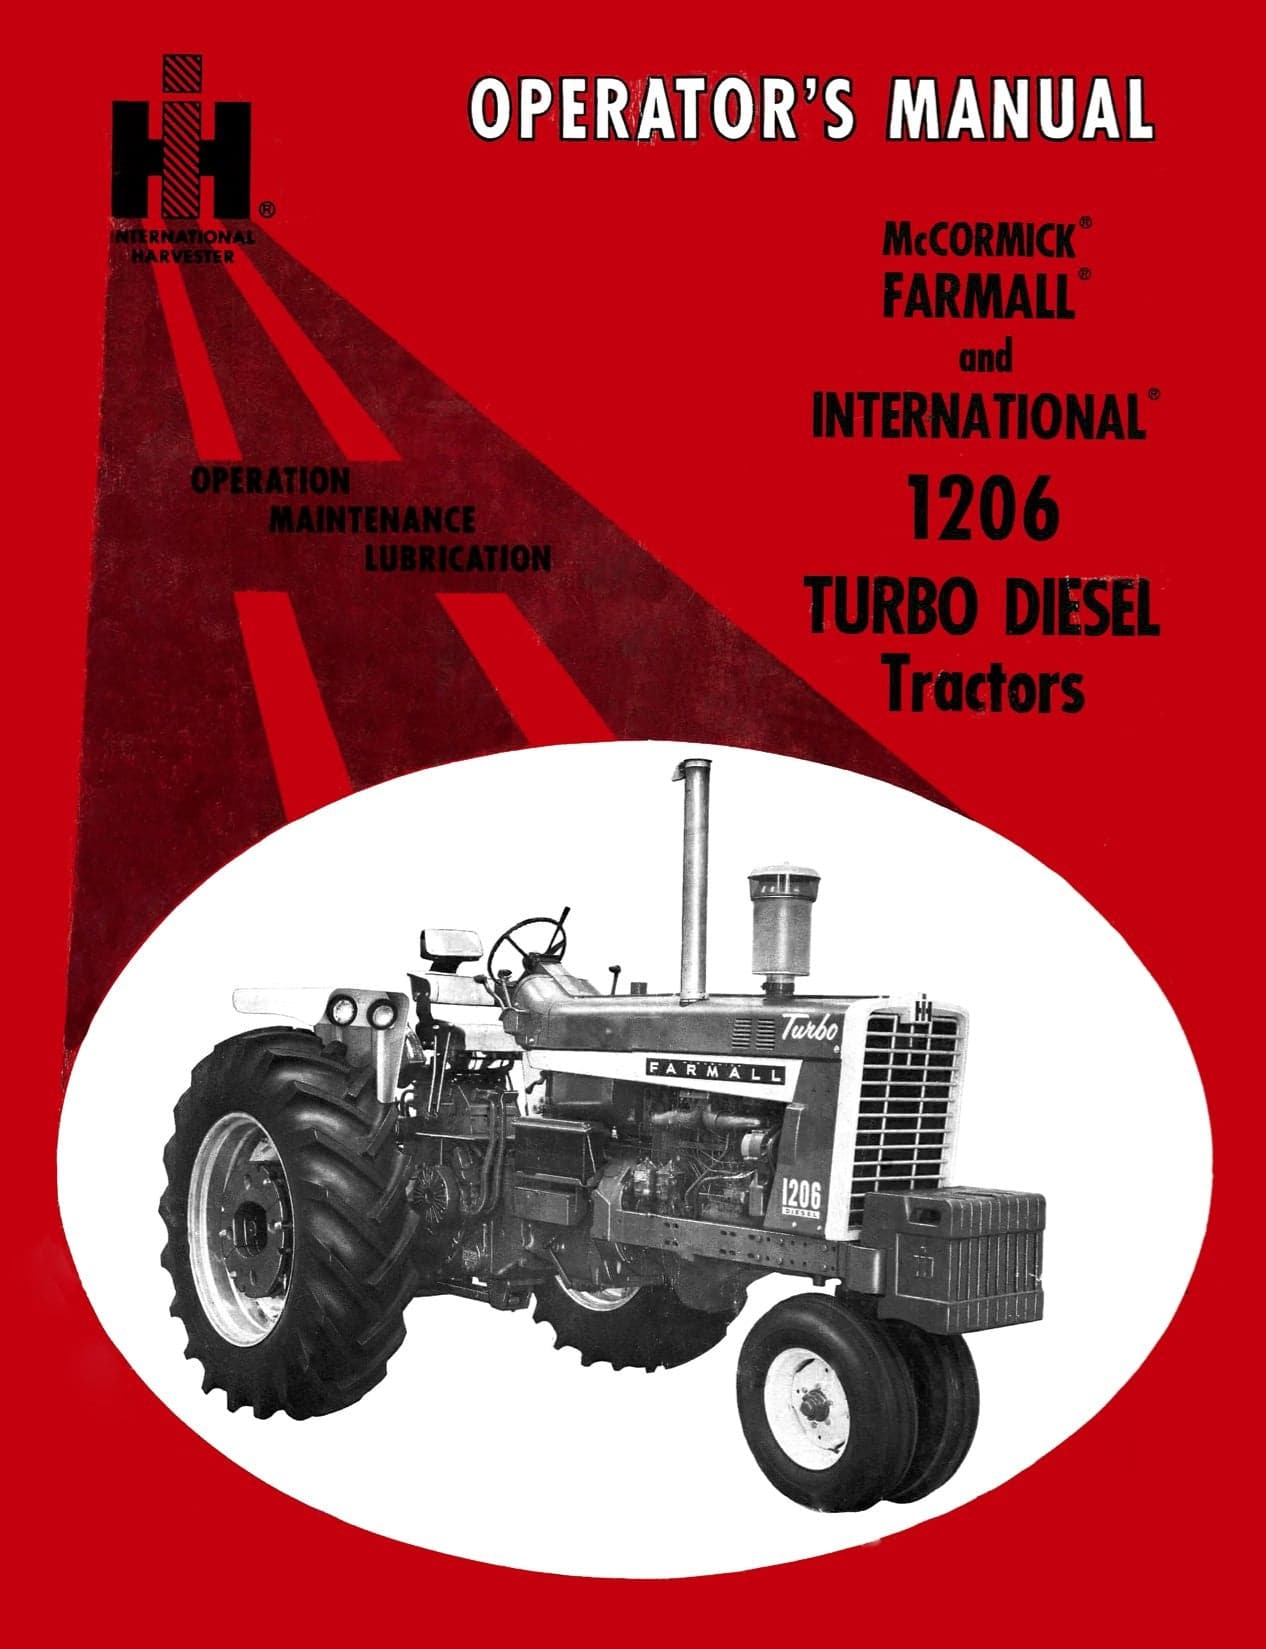 farmall diesel logo